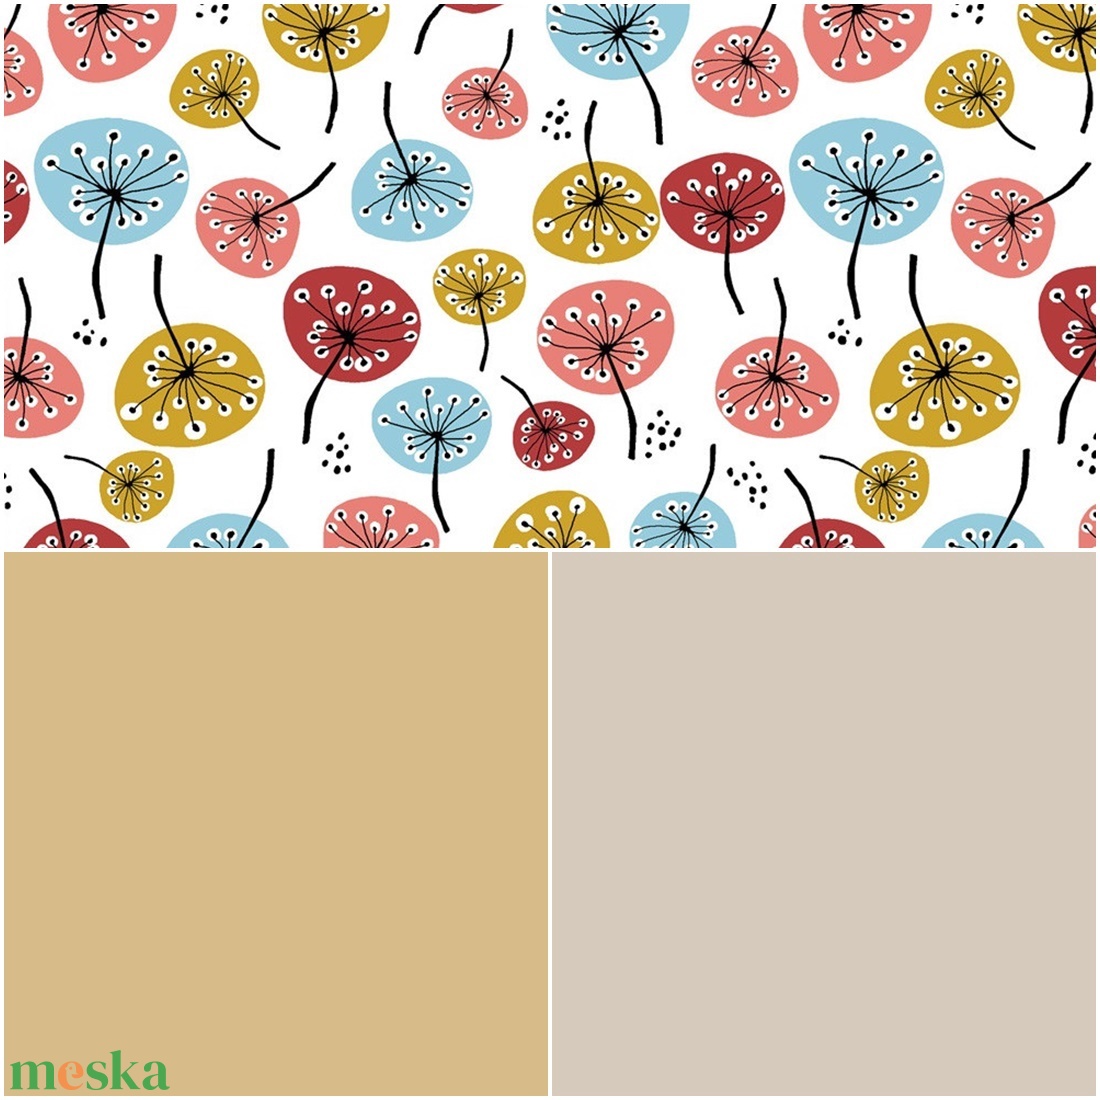 GOTS Biopamut textilzsebkendő ŐSZ színtípusoknak - pitypang mintával, fáradt sárga és bézs színben - szépségápolás - kozmetikai ajándékcsomag - Meska.hu